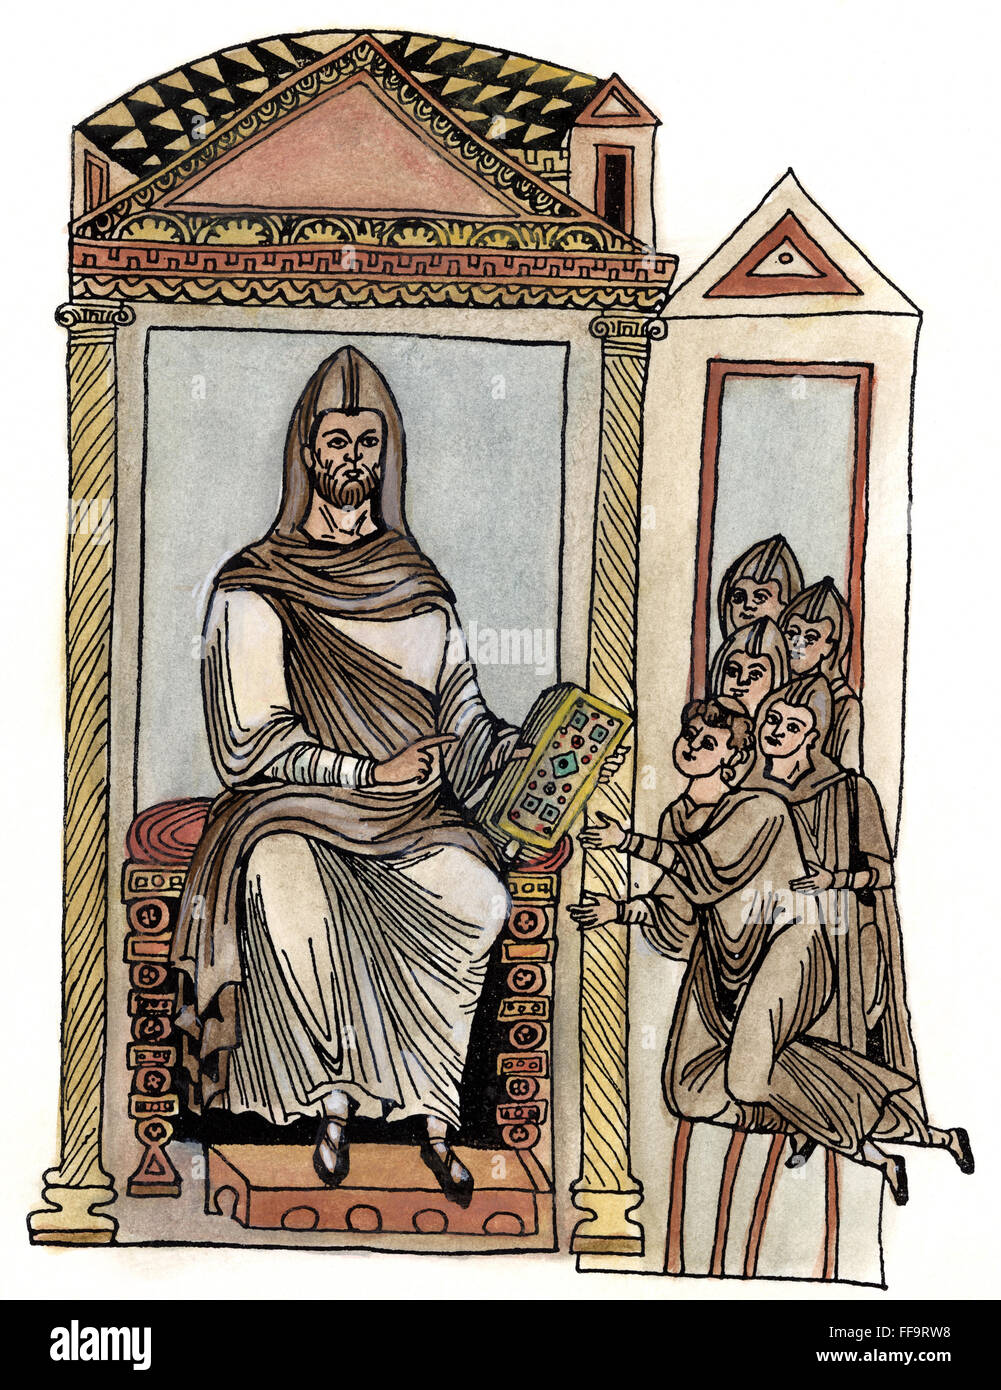 ST. Benedikt (c480-c543). religiöse /nItalian. Der Heilige Benedikt von Nursia, die Übergabe der in der Regel Vorschriften über das Klosterleben und Disziplin, um eine Gruppe von Mönchen. Zeichnung nach einer Buchmalerei des 12. Jahrhunderts. Stockfoto